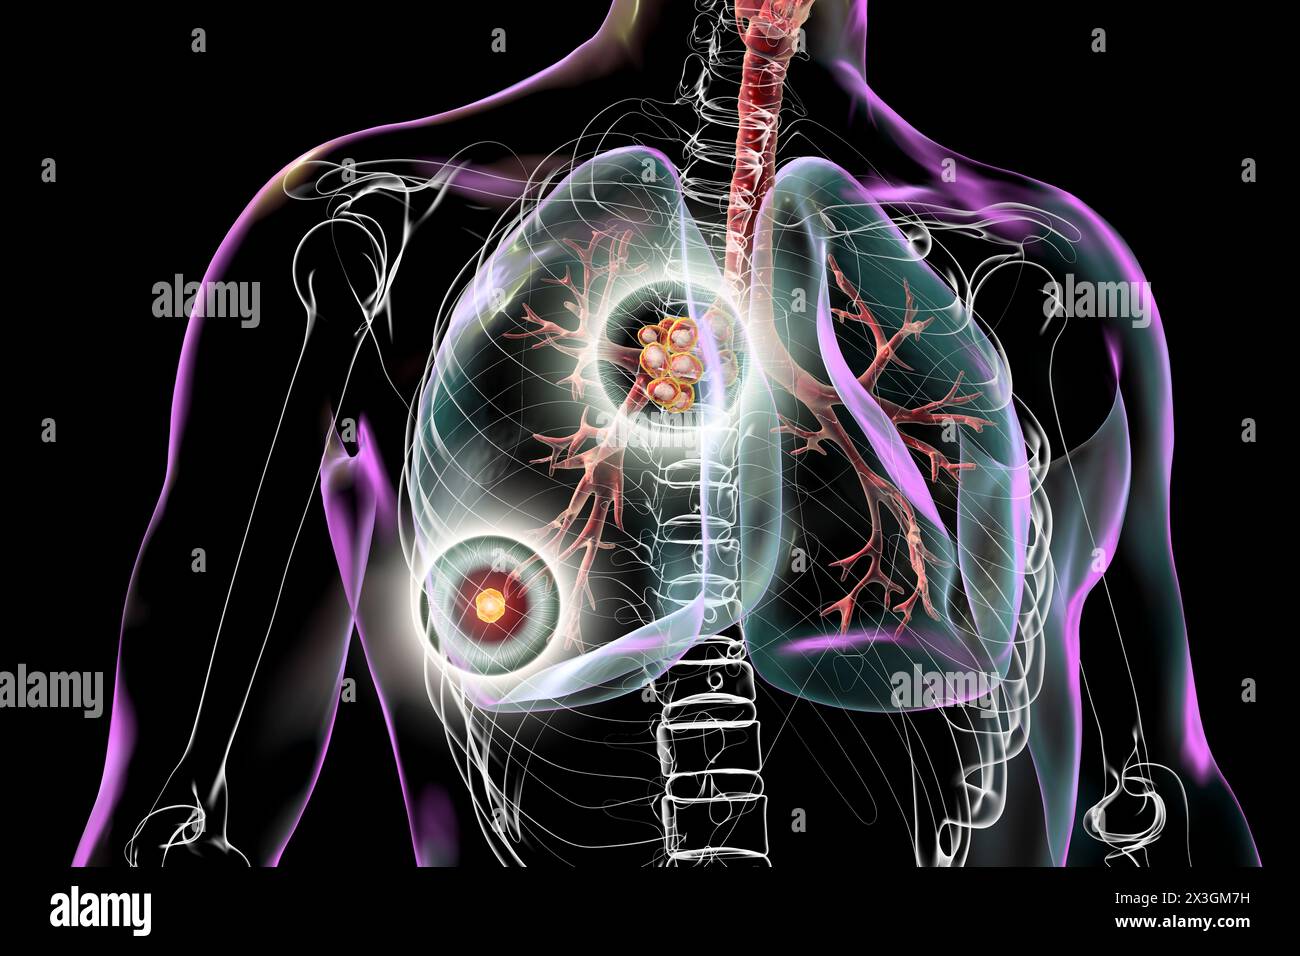 Illustration d'une tuberculose pulmonaire primitive avec le complexe de Ranke, mettant en évidence des lésions pulmonaires et des adénites médiastinales. Banque D'Images